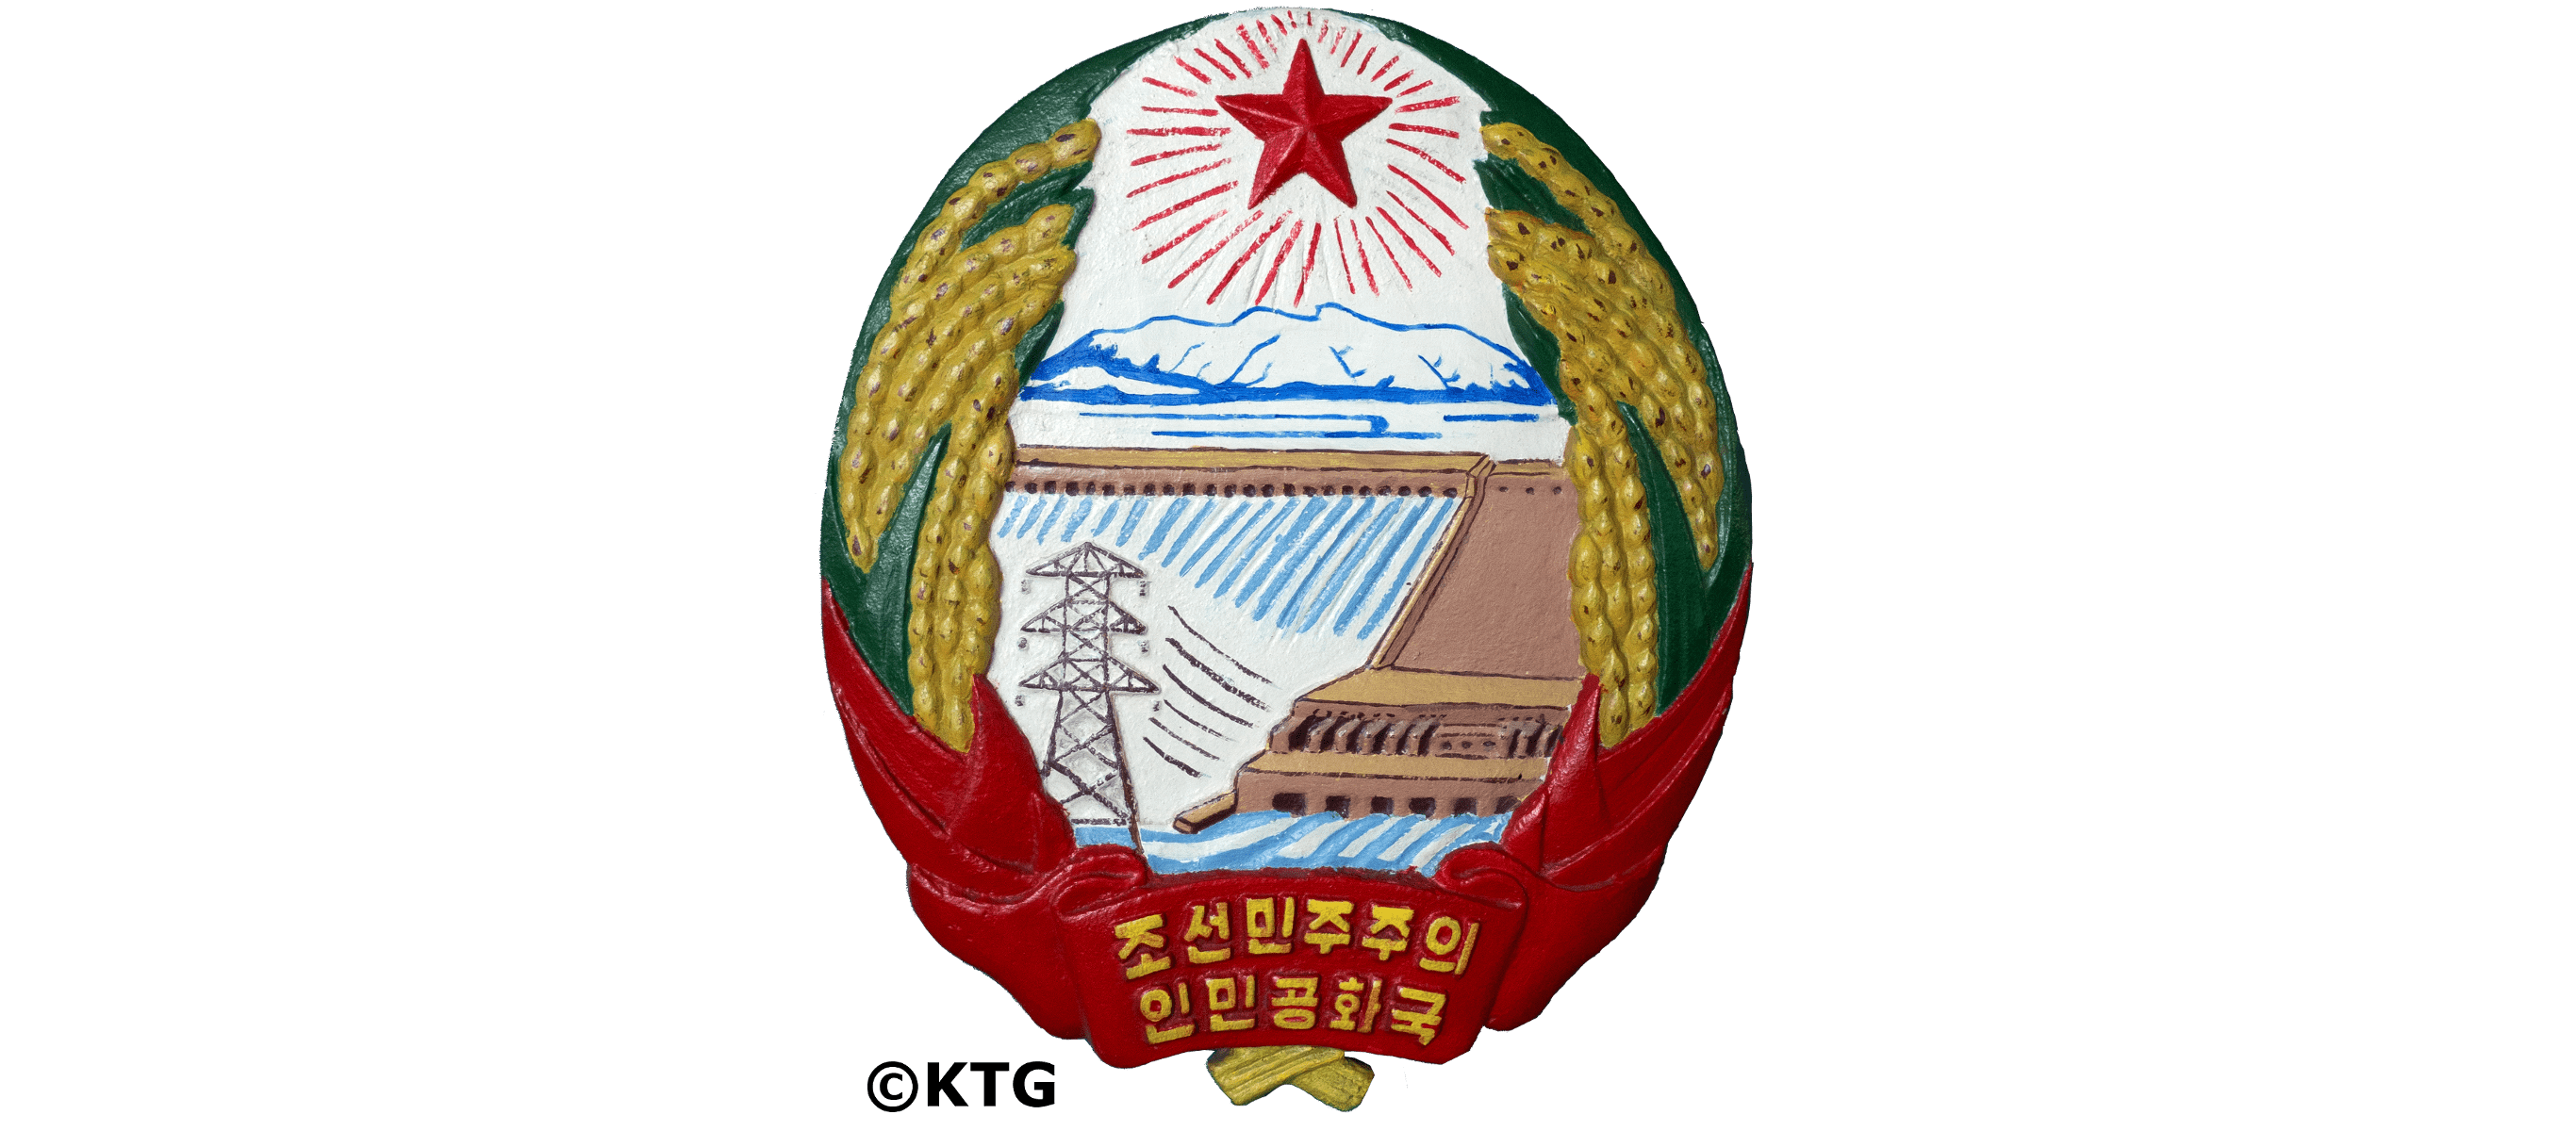 Emblème national de la RPDC. L'emblème national de la Corée du Nord se compose d'une étoile rouge, le mont Paekdu, un barrage, des tours électriques et des champs de maïs. Photo prise par KTG